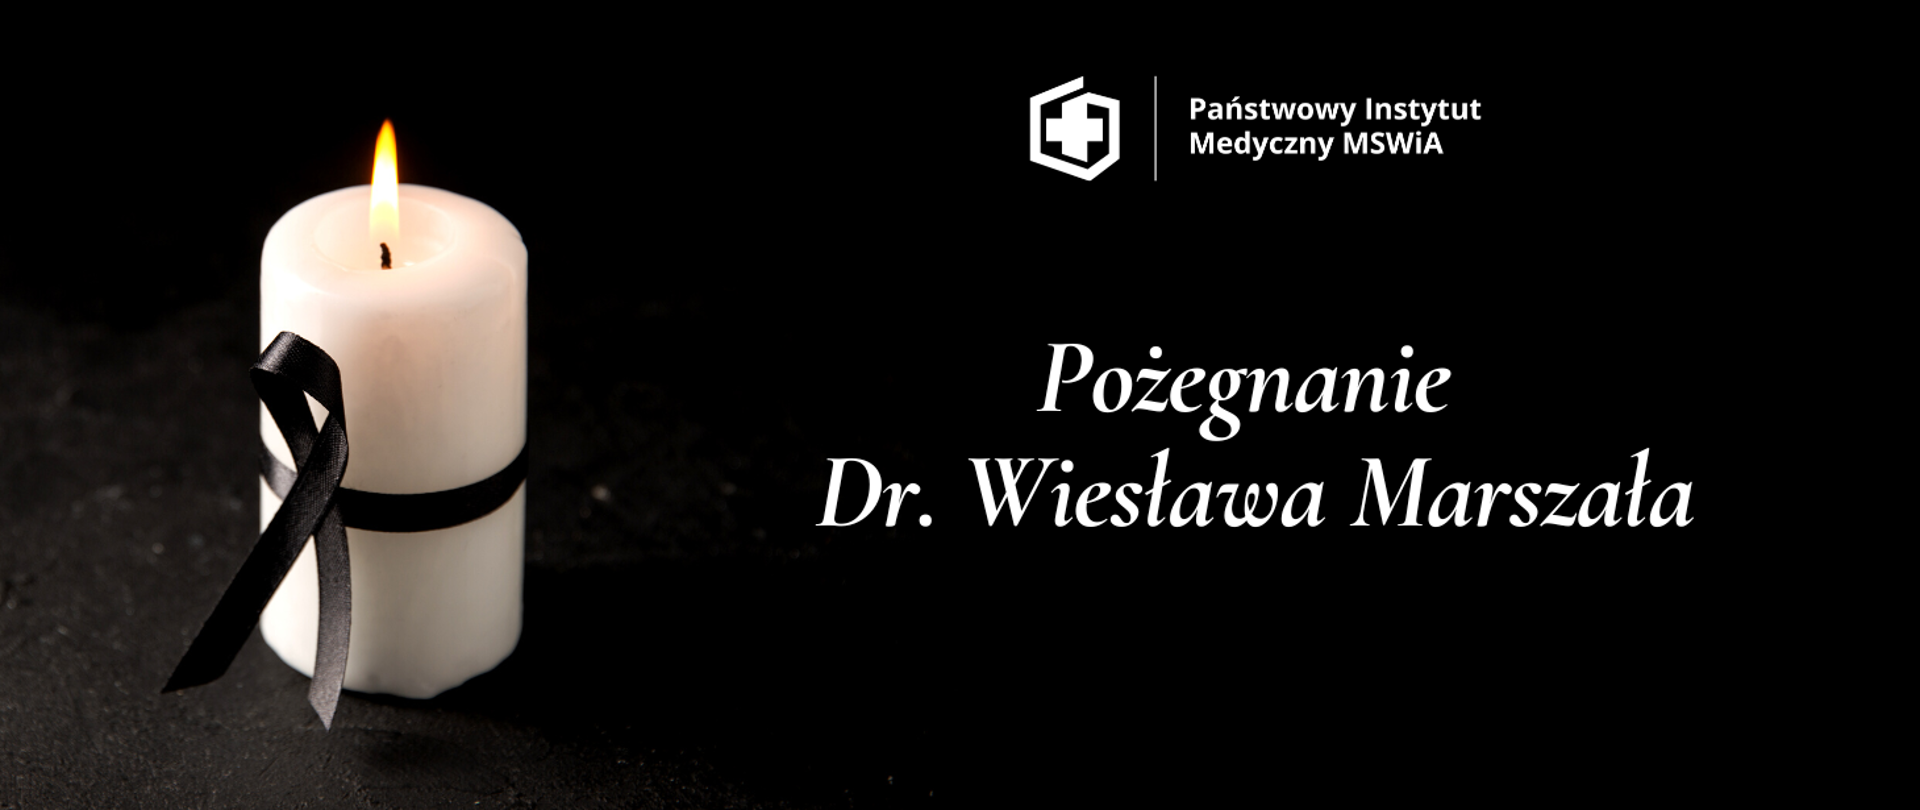 Pożegnanie
Dr. Wiesława Marszała